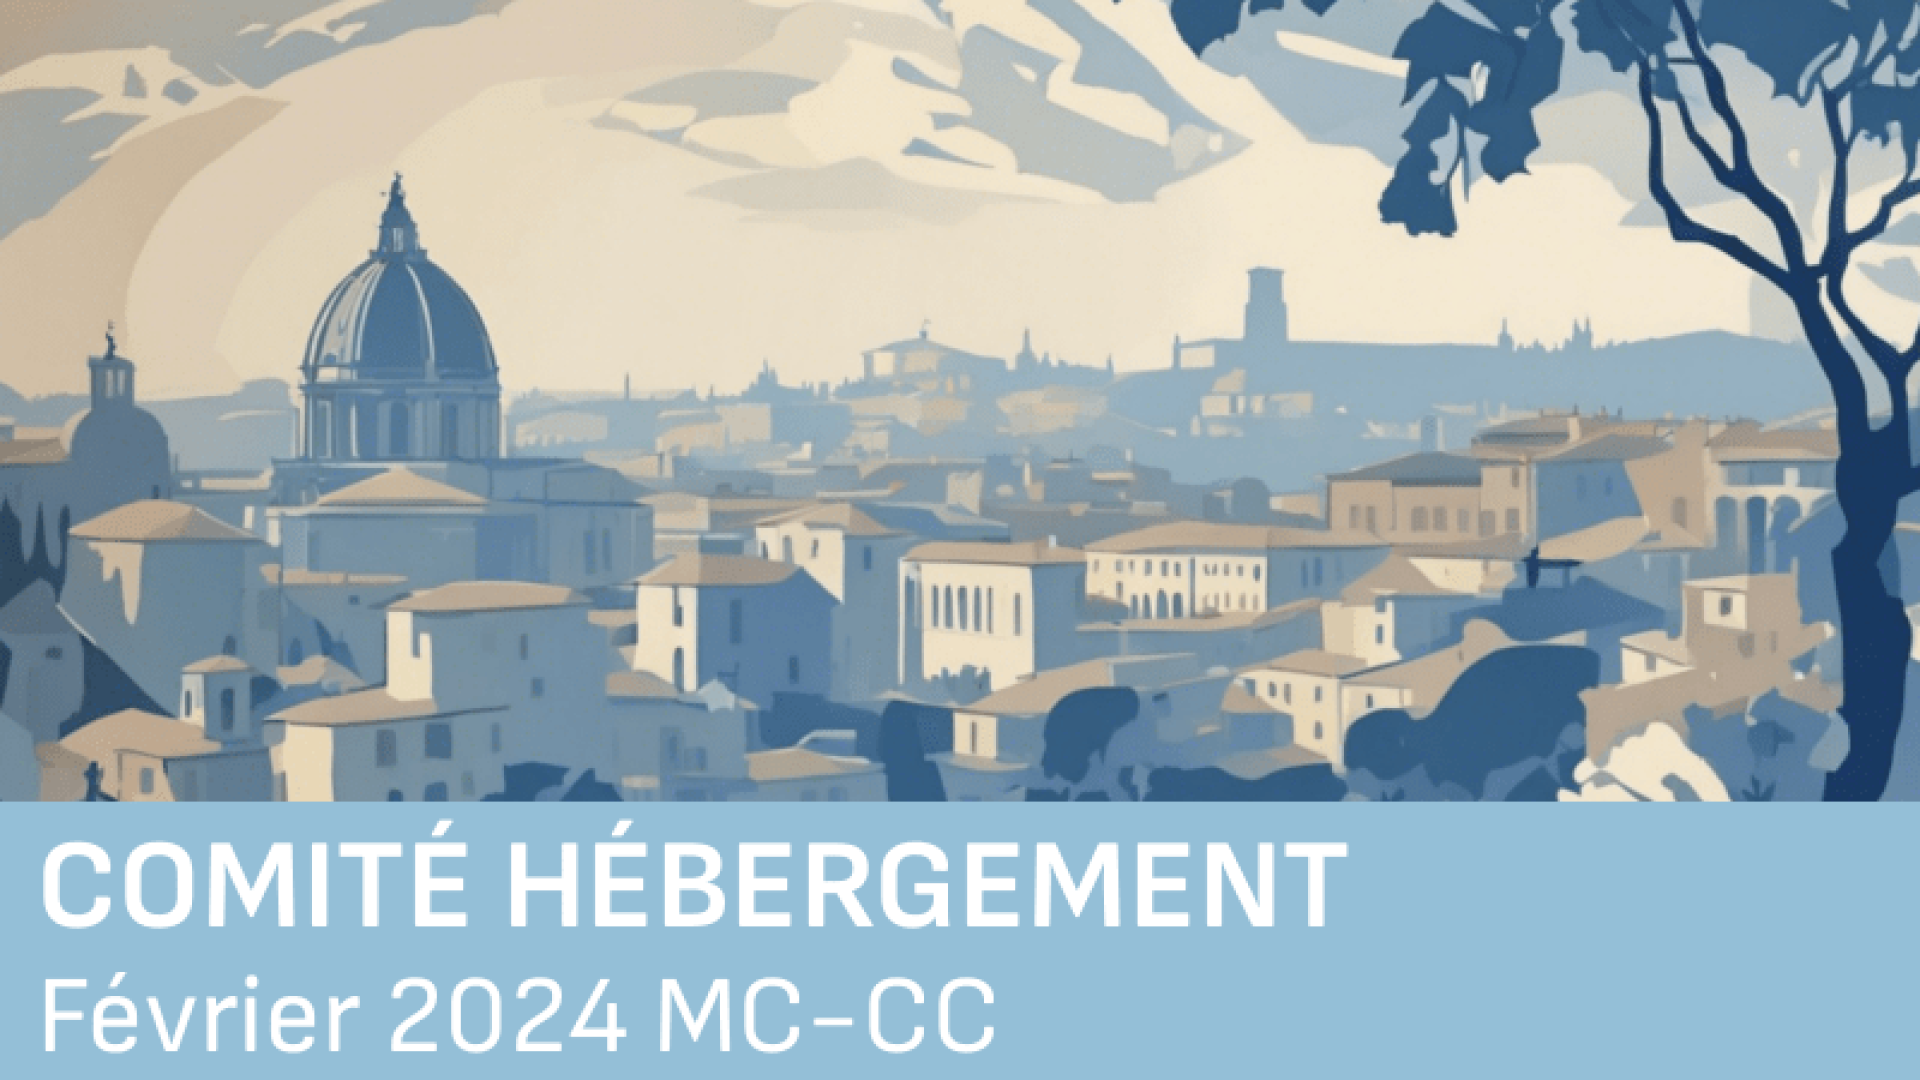 hebergement MC CC février 2024